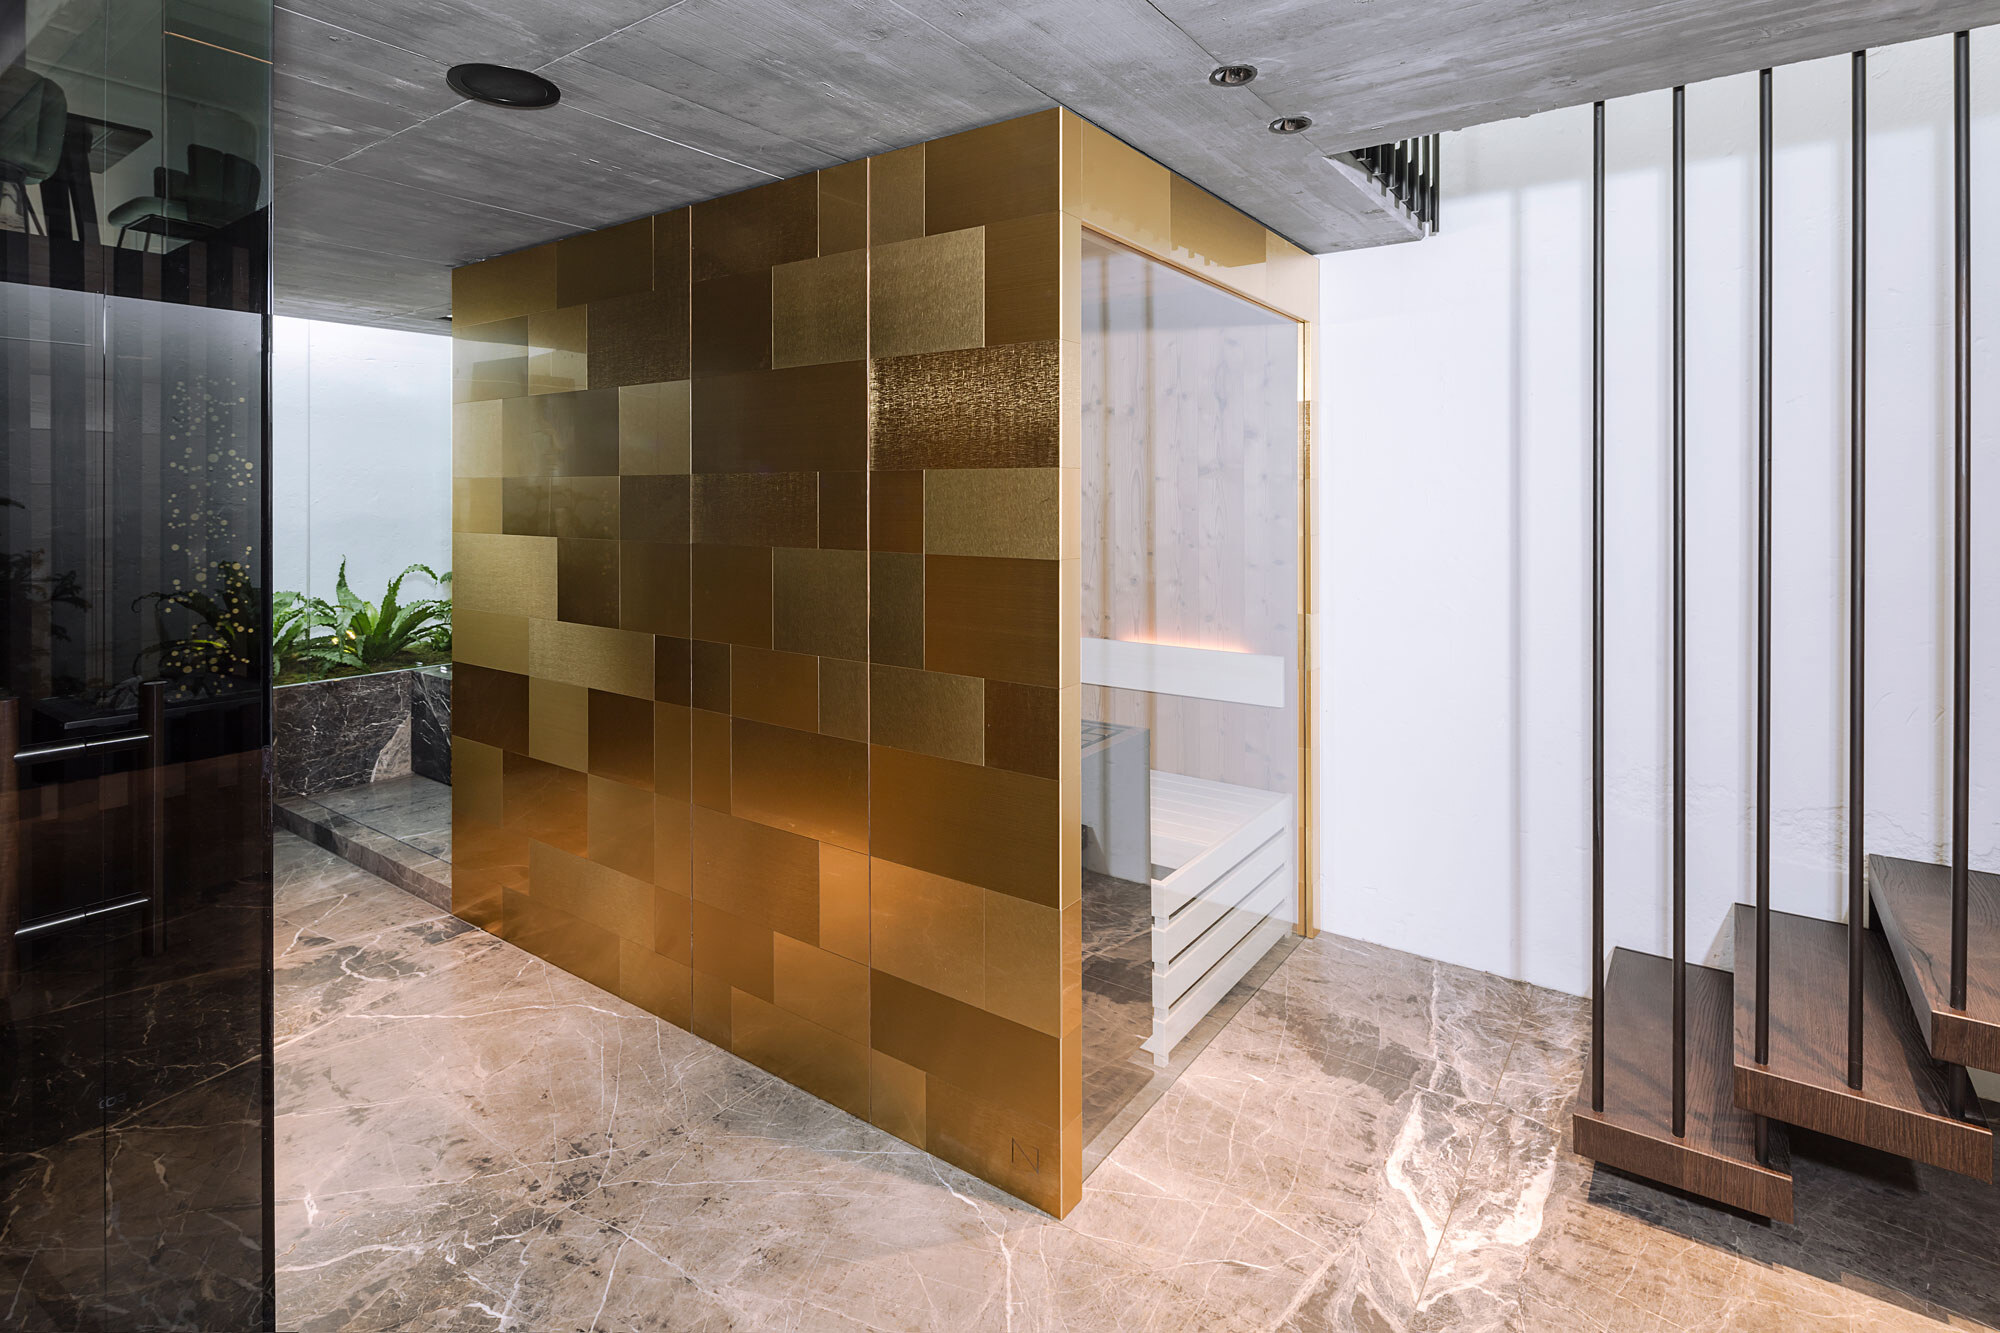 Goldene Designer Sauna im Sale vom Saunahersteller Deisl, außen verkleidet mit gebuersteten Metallfliesen inklusive einer unsichtbar integrierten Saunatuere und einem großen Panoramafenster.